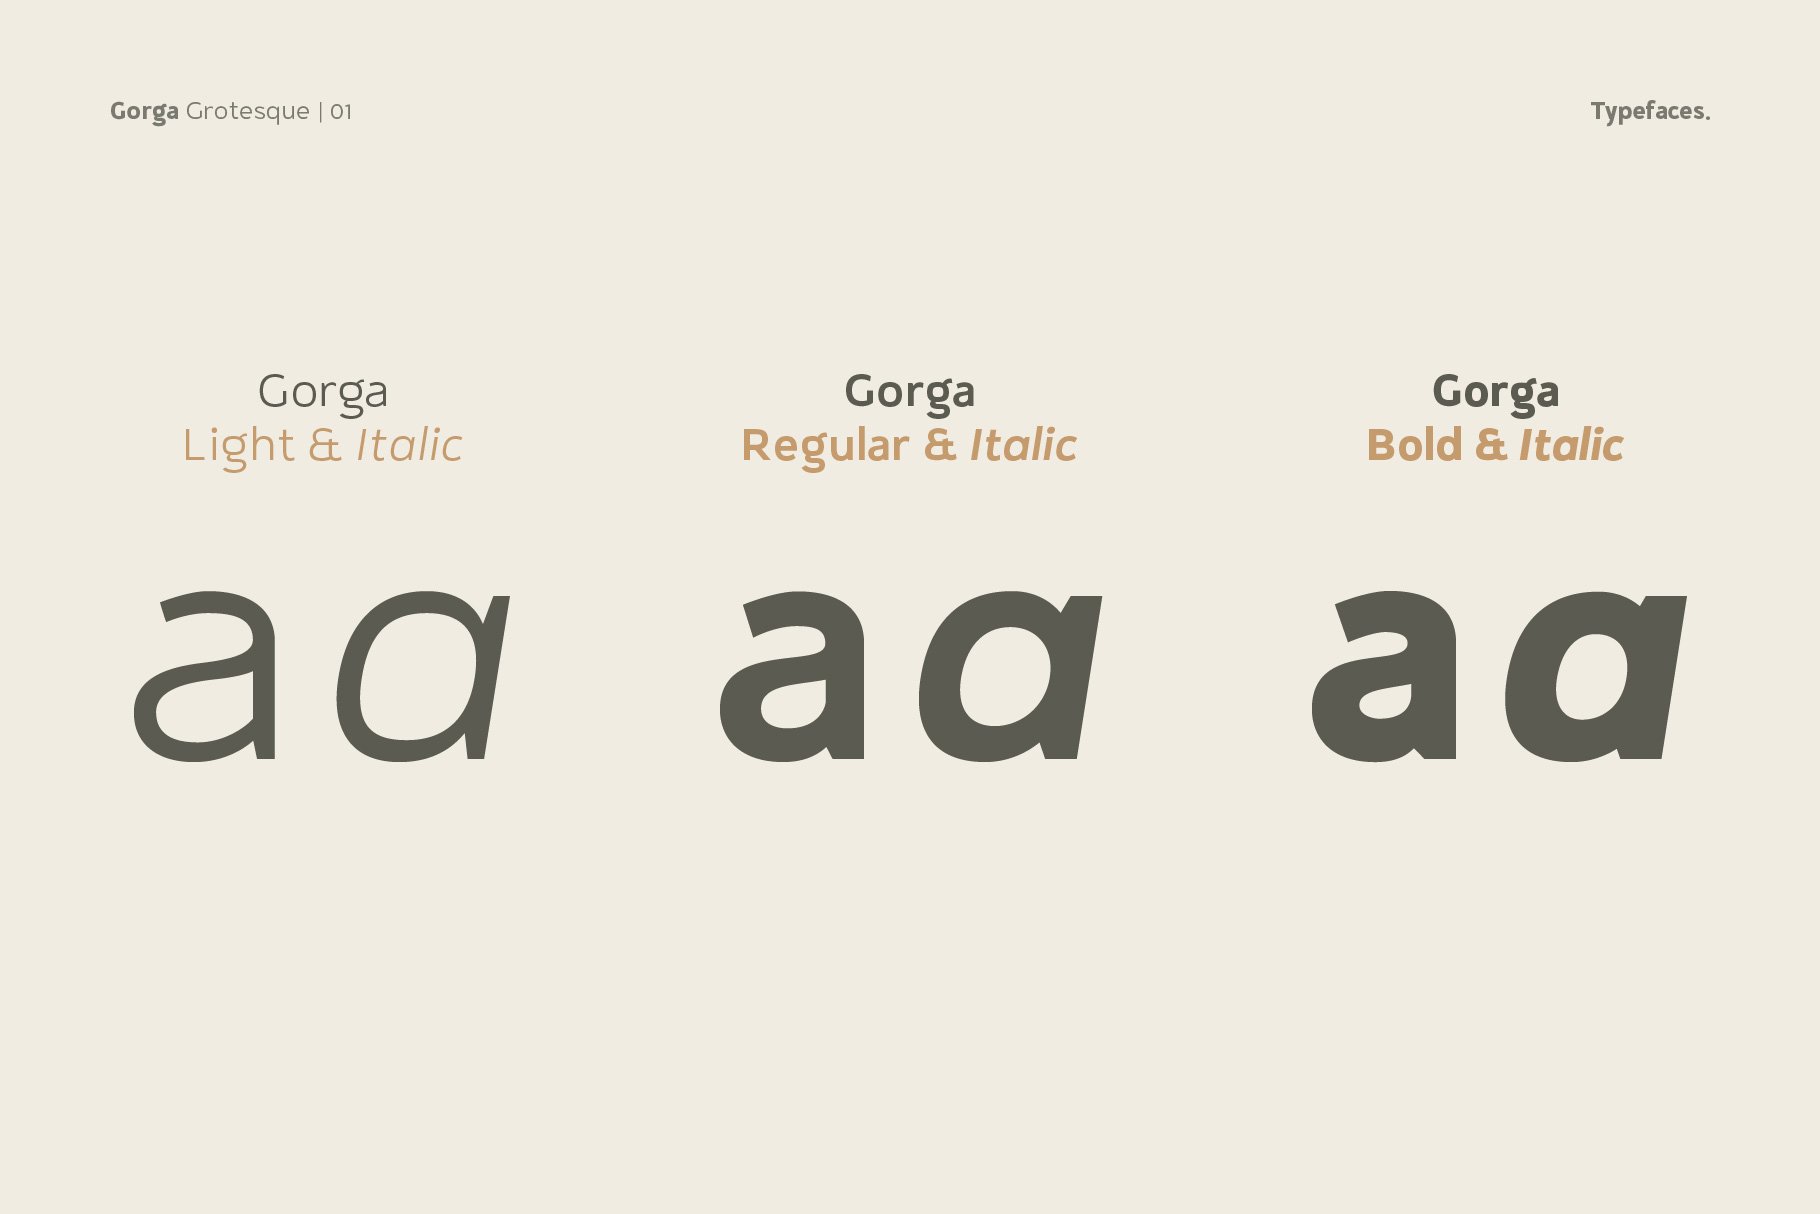 Gorga Grotesque Sans Serif Fonts